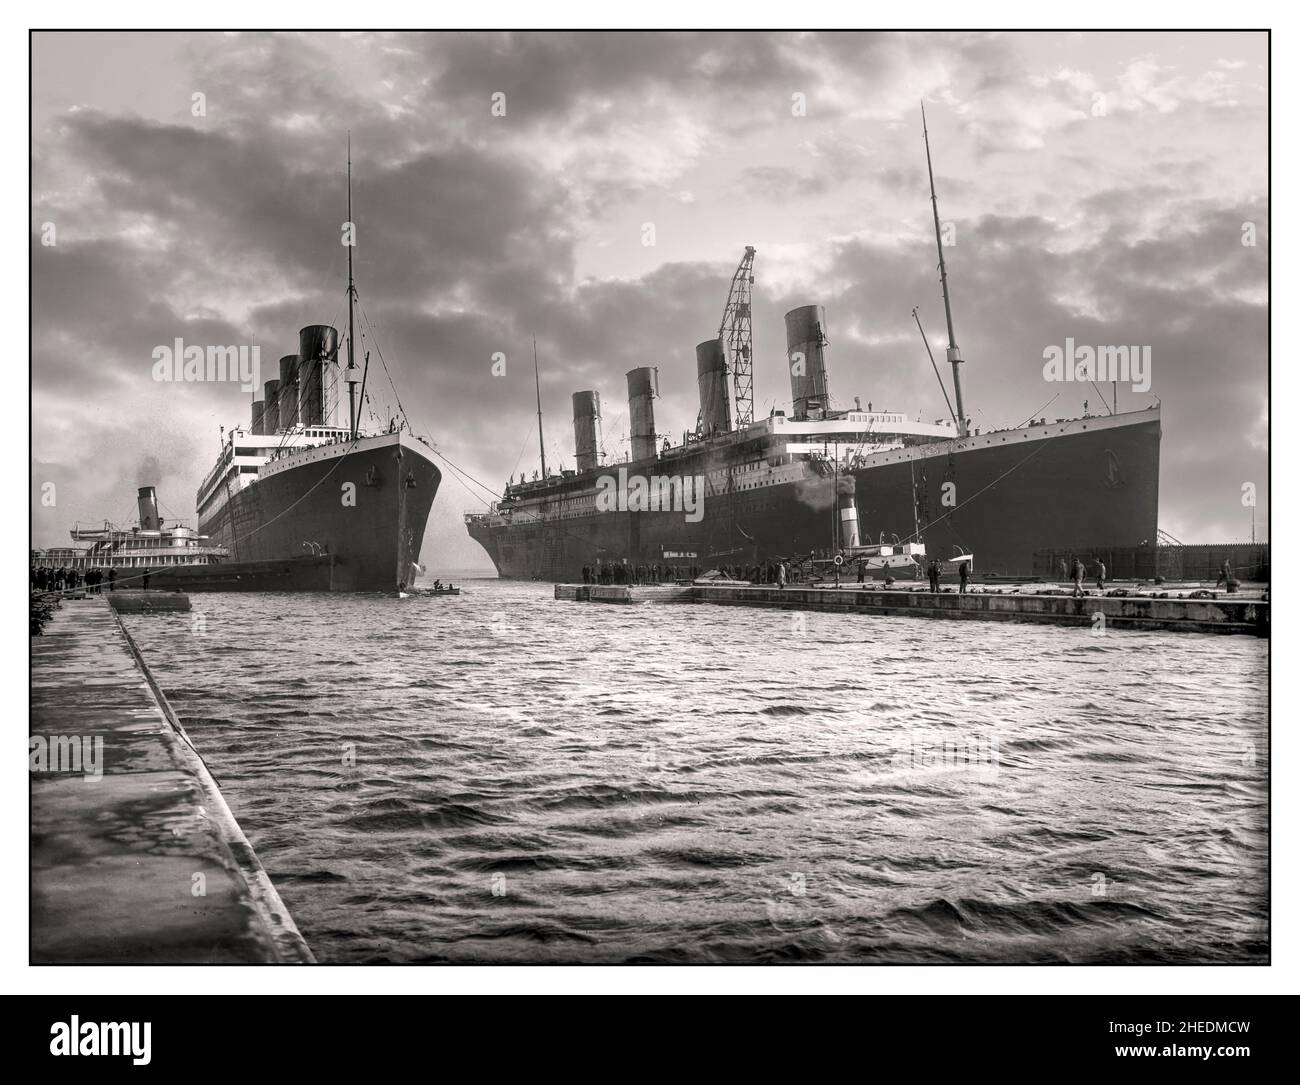 TITANIC & OLYMPIC Sister Ocean liners Vintage B&W RMS Olympic entrant dans le port d'amarrage de Belfast avec RMS Titanic en préparation finale le 1912 mars, pour son voyage fatidique de jeune fille le 14th avril 1912 Banque D'Images